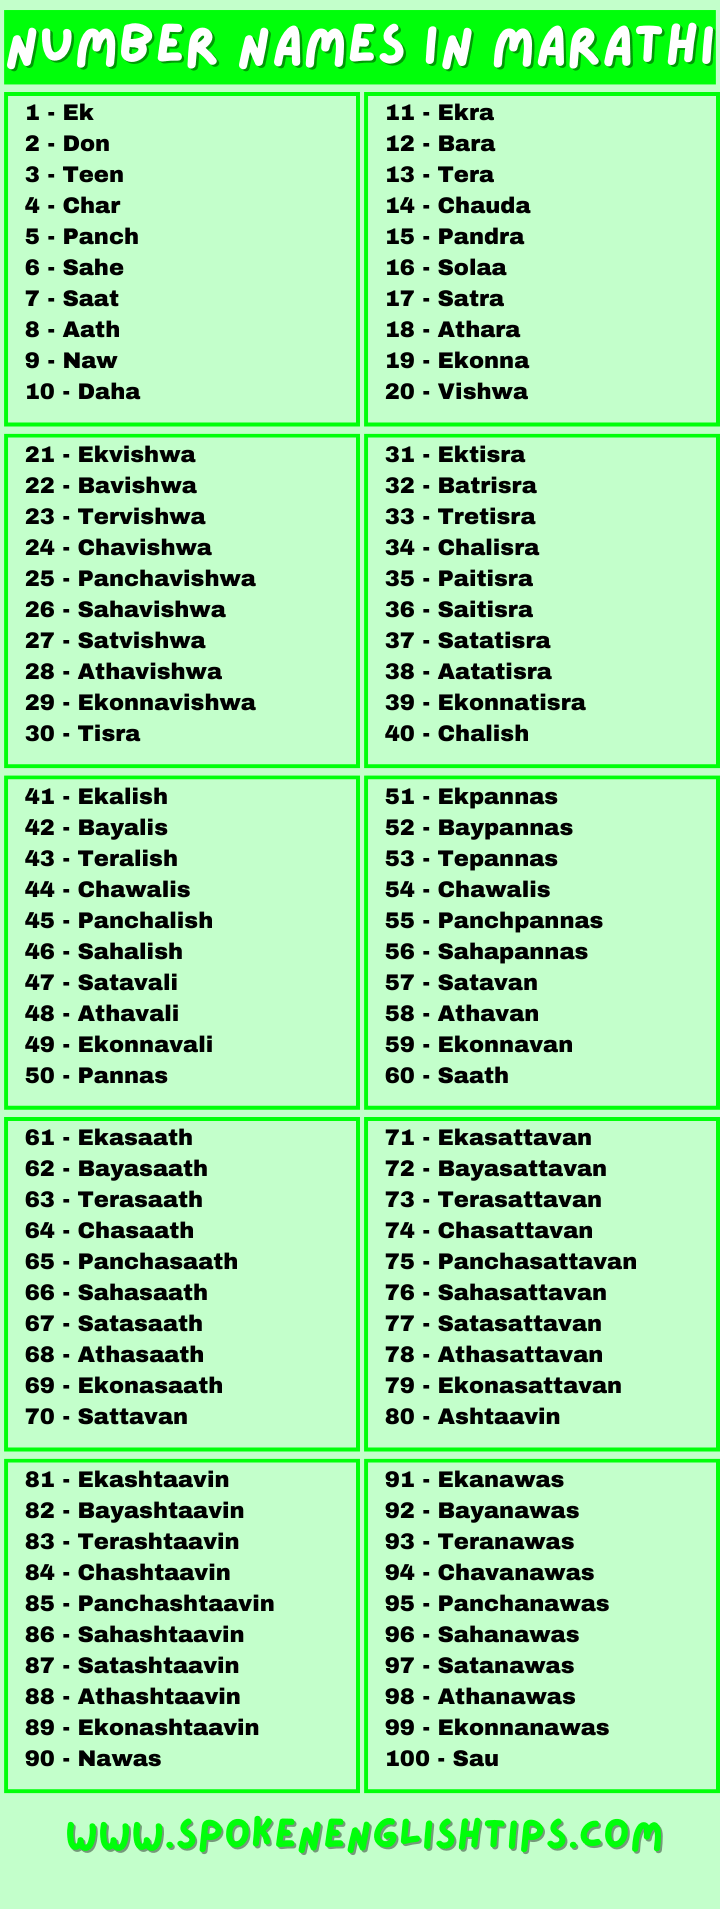 Number Names in Marathi